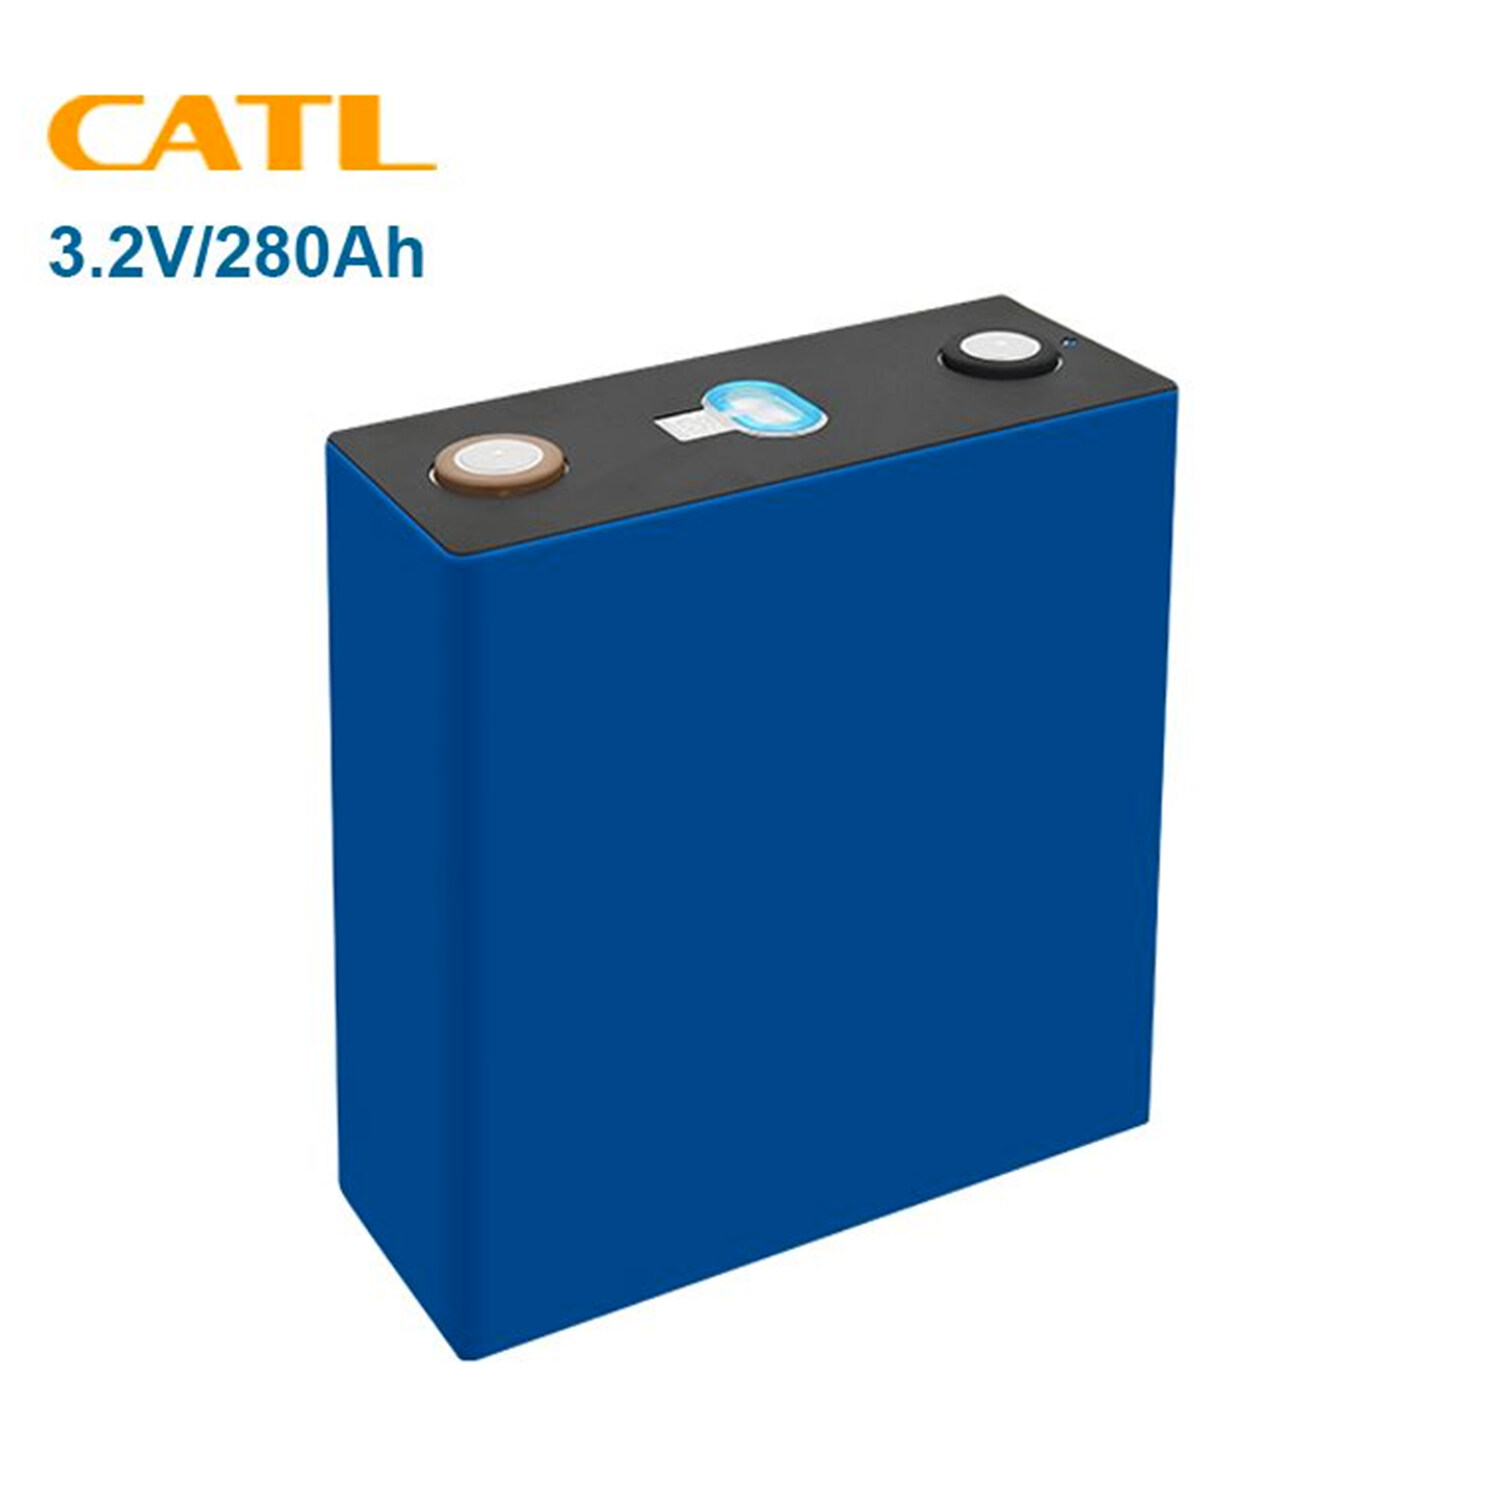 CATL 3.2V 280Ah LiFePO4 Battery Cells Brand New Grade A+